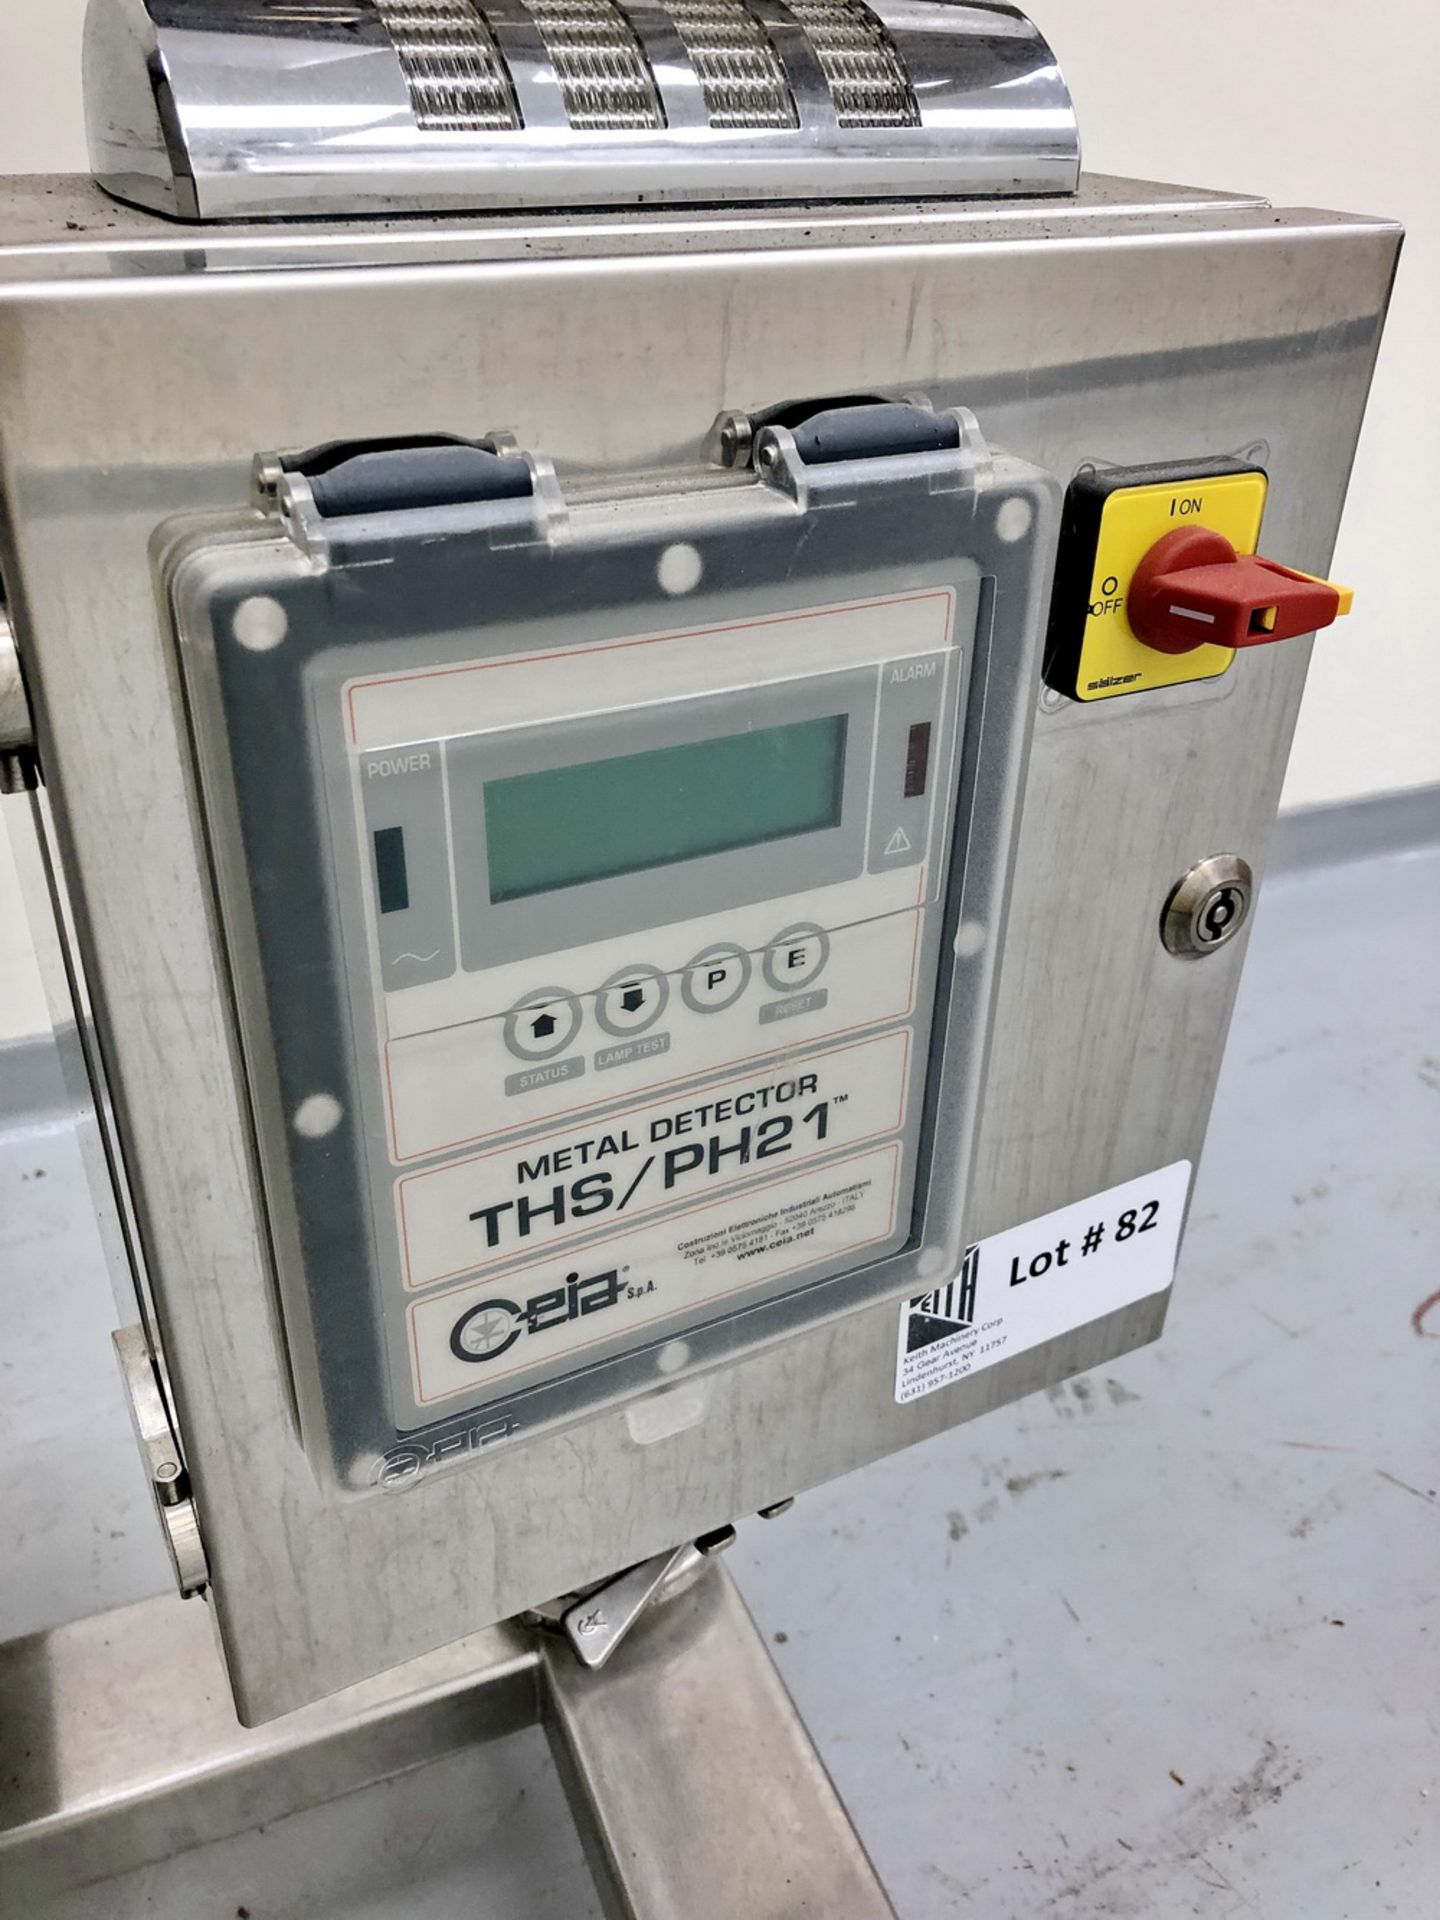 Ceia Metal Detector, Model THS/PH21 - PT3, S/N 20700209014 - Image 2 of 5